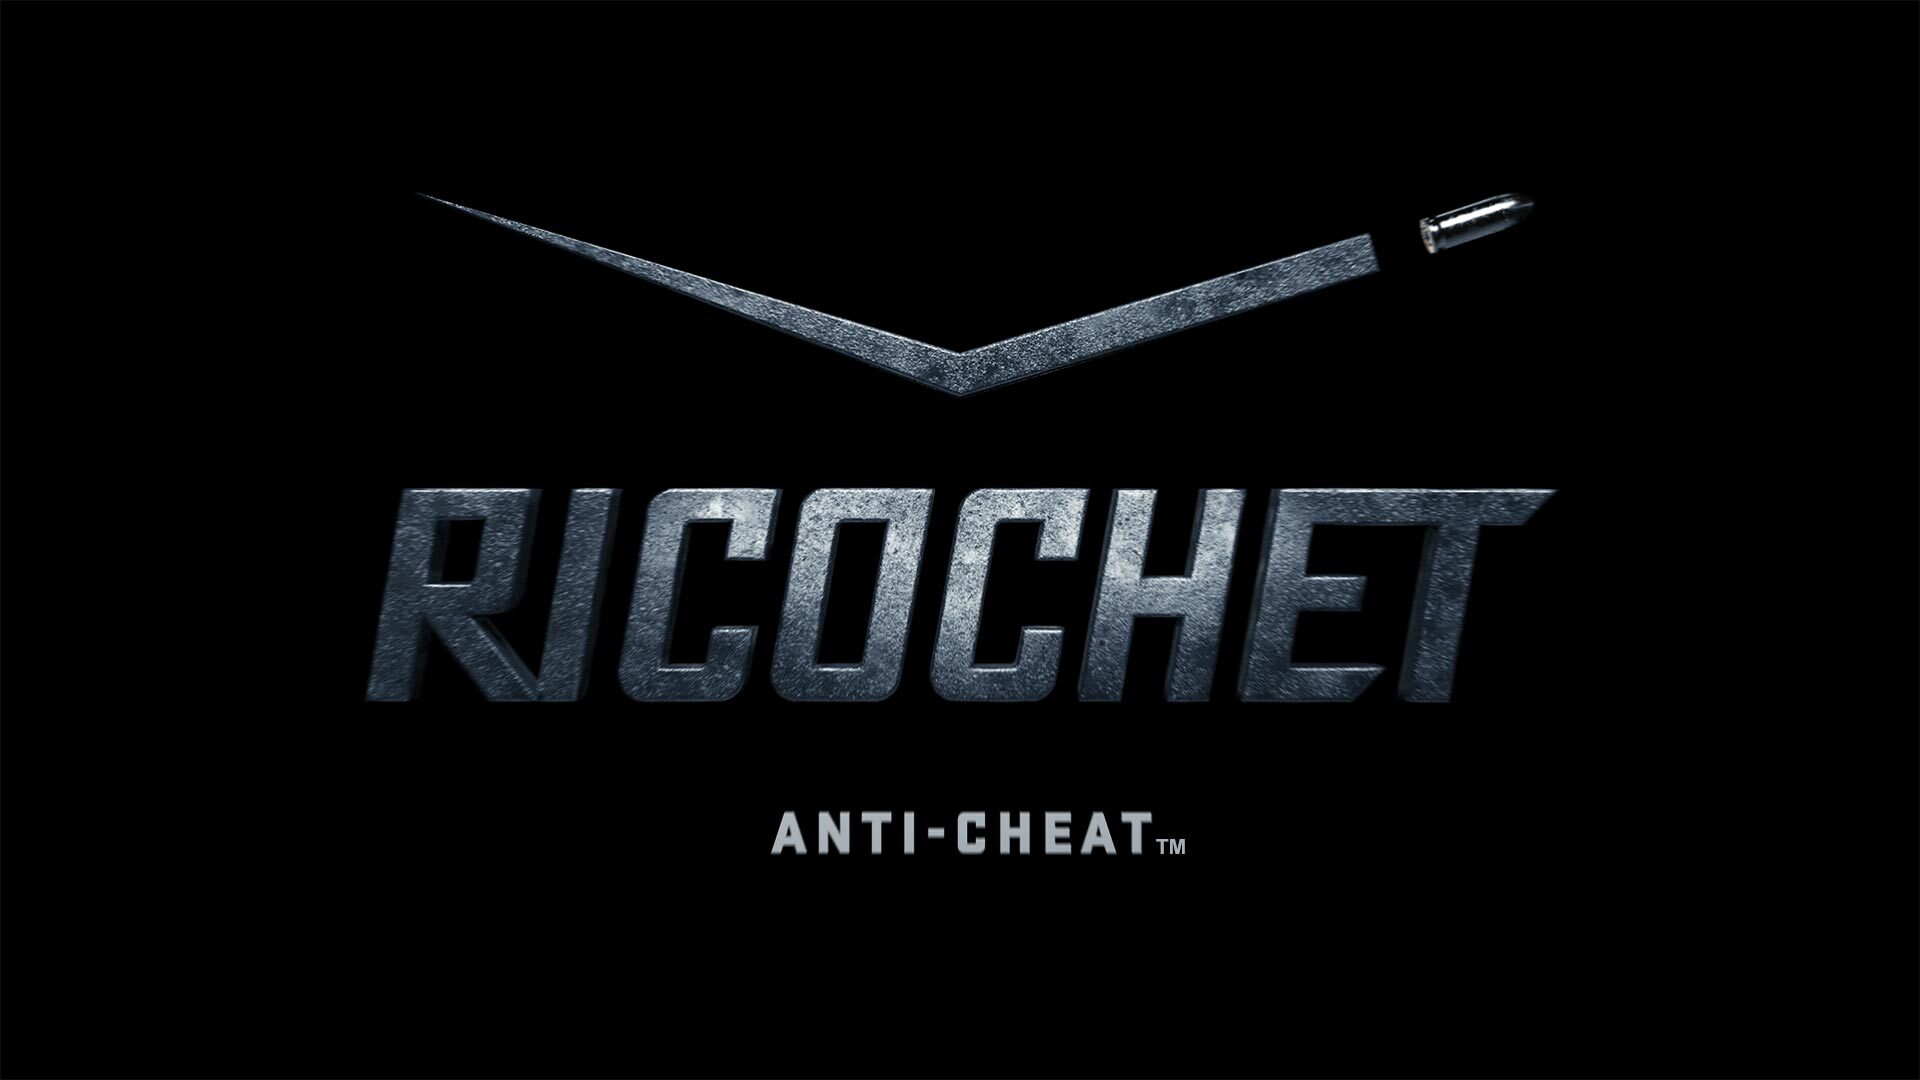 Ricochet es el software antitrampas de Call of Duty.  Ha estado baneando a los jugadores de MW2. 